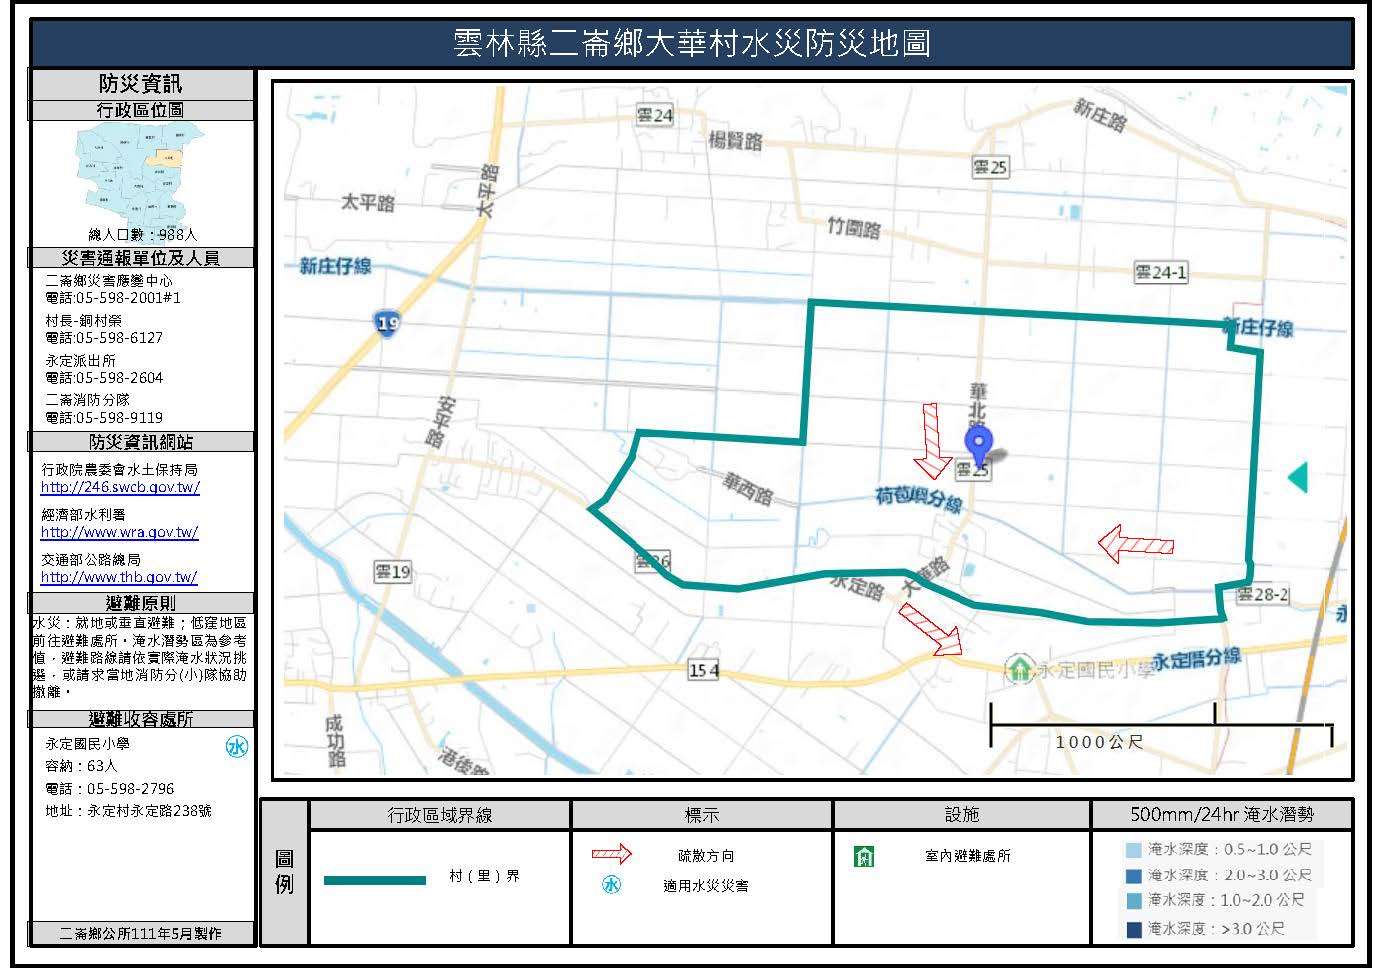 大華村水災簡易防災地圖